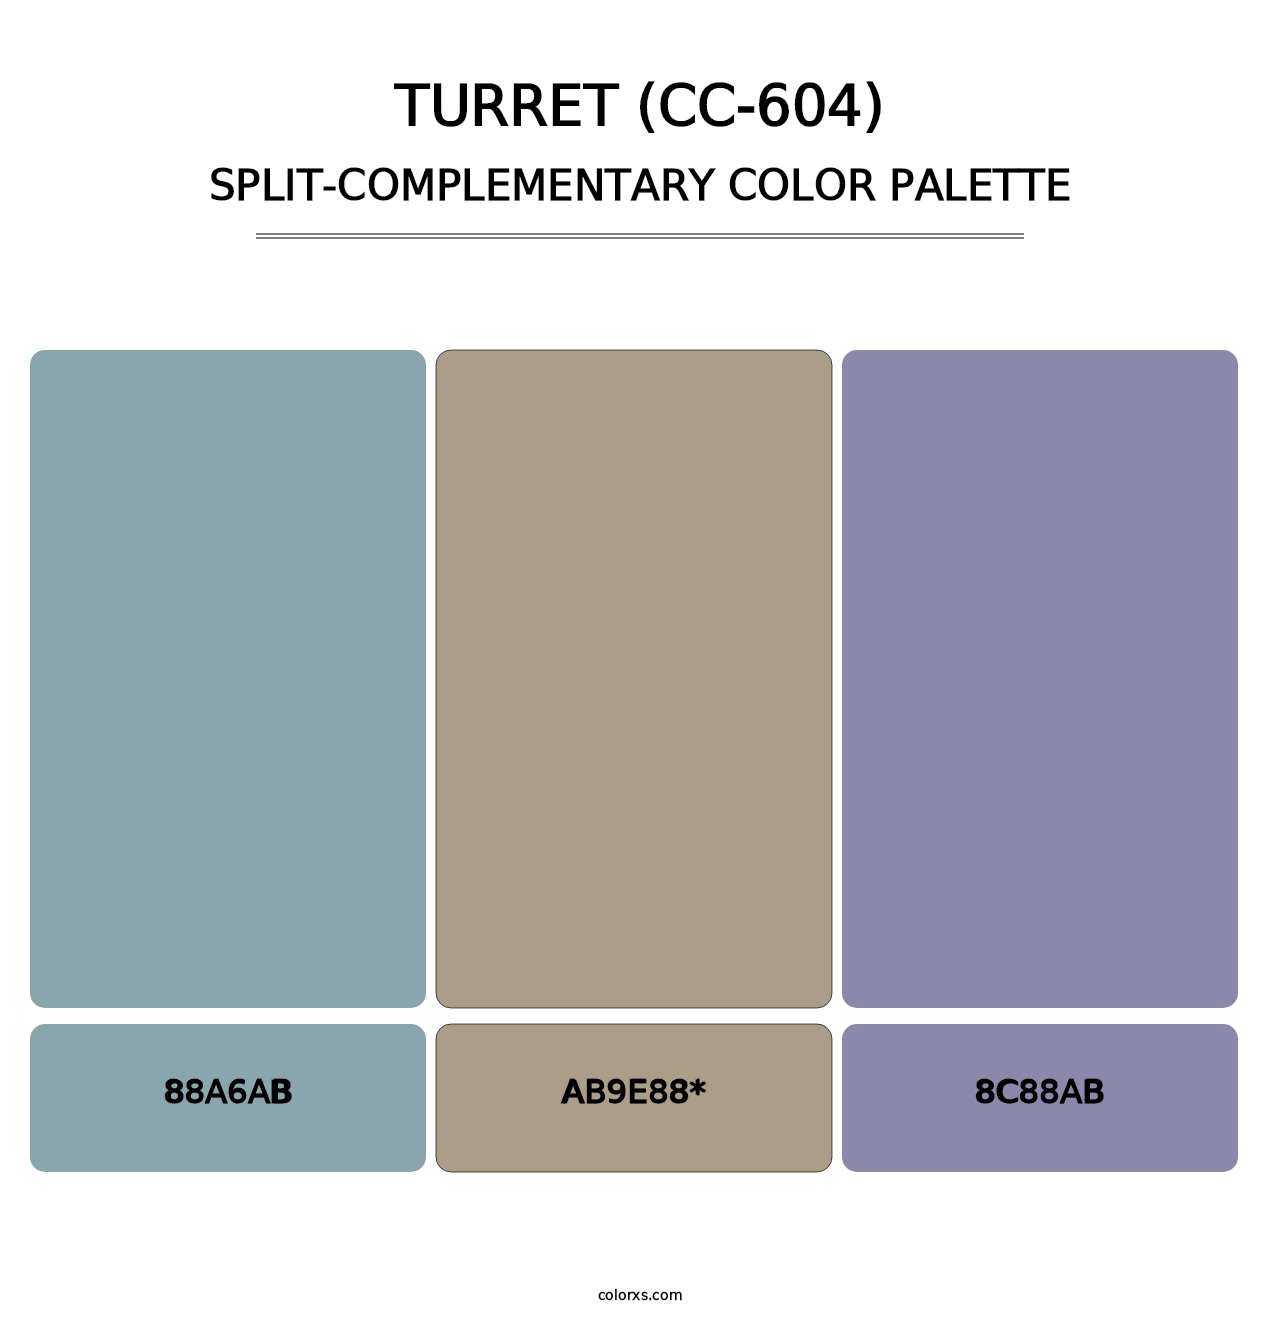 Turret (CC-604) - Split-Complementary Color Palette